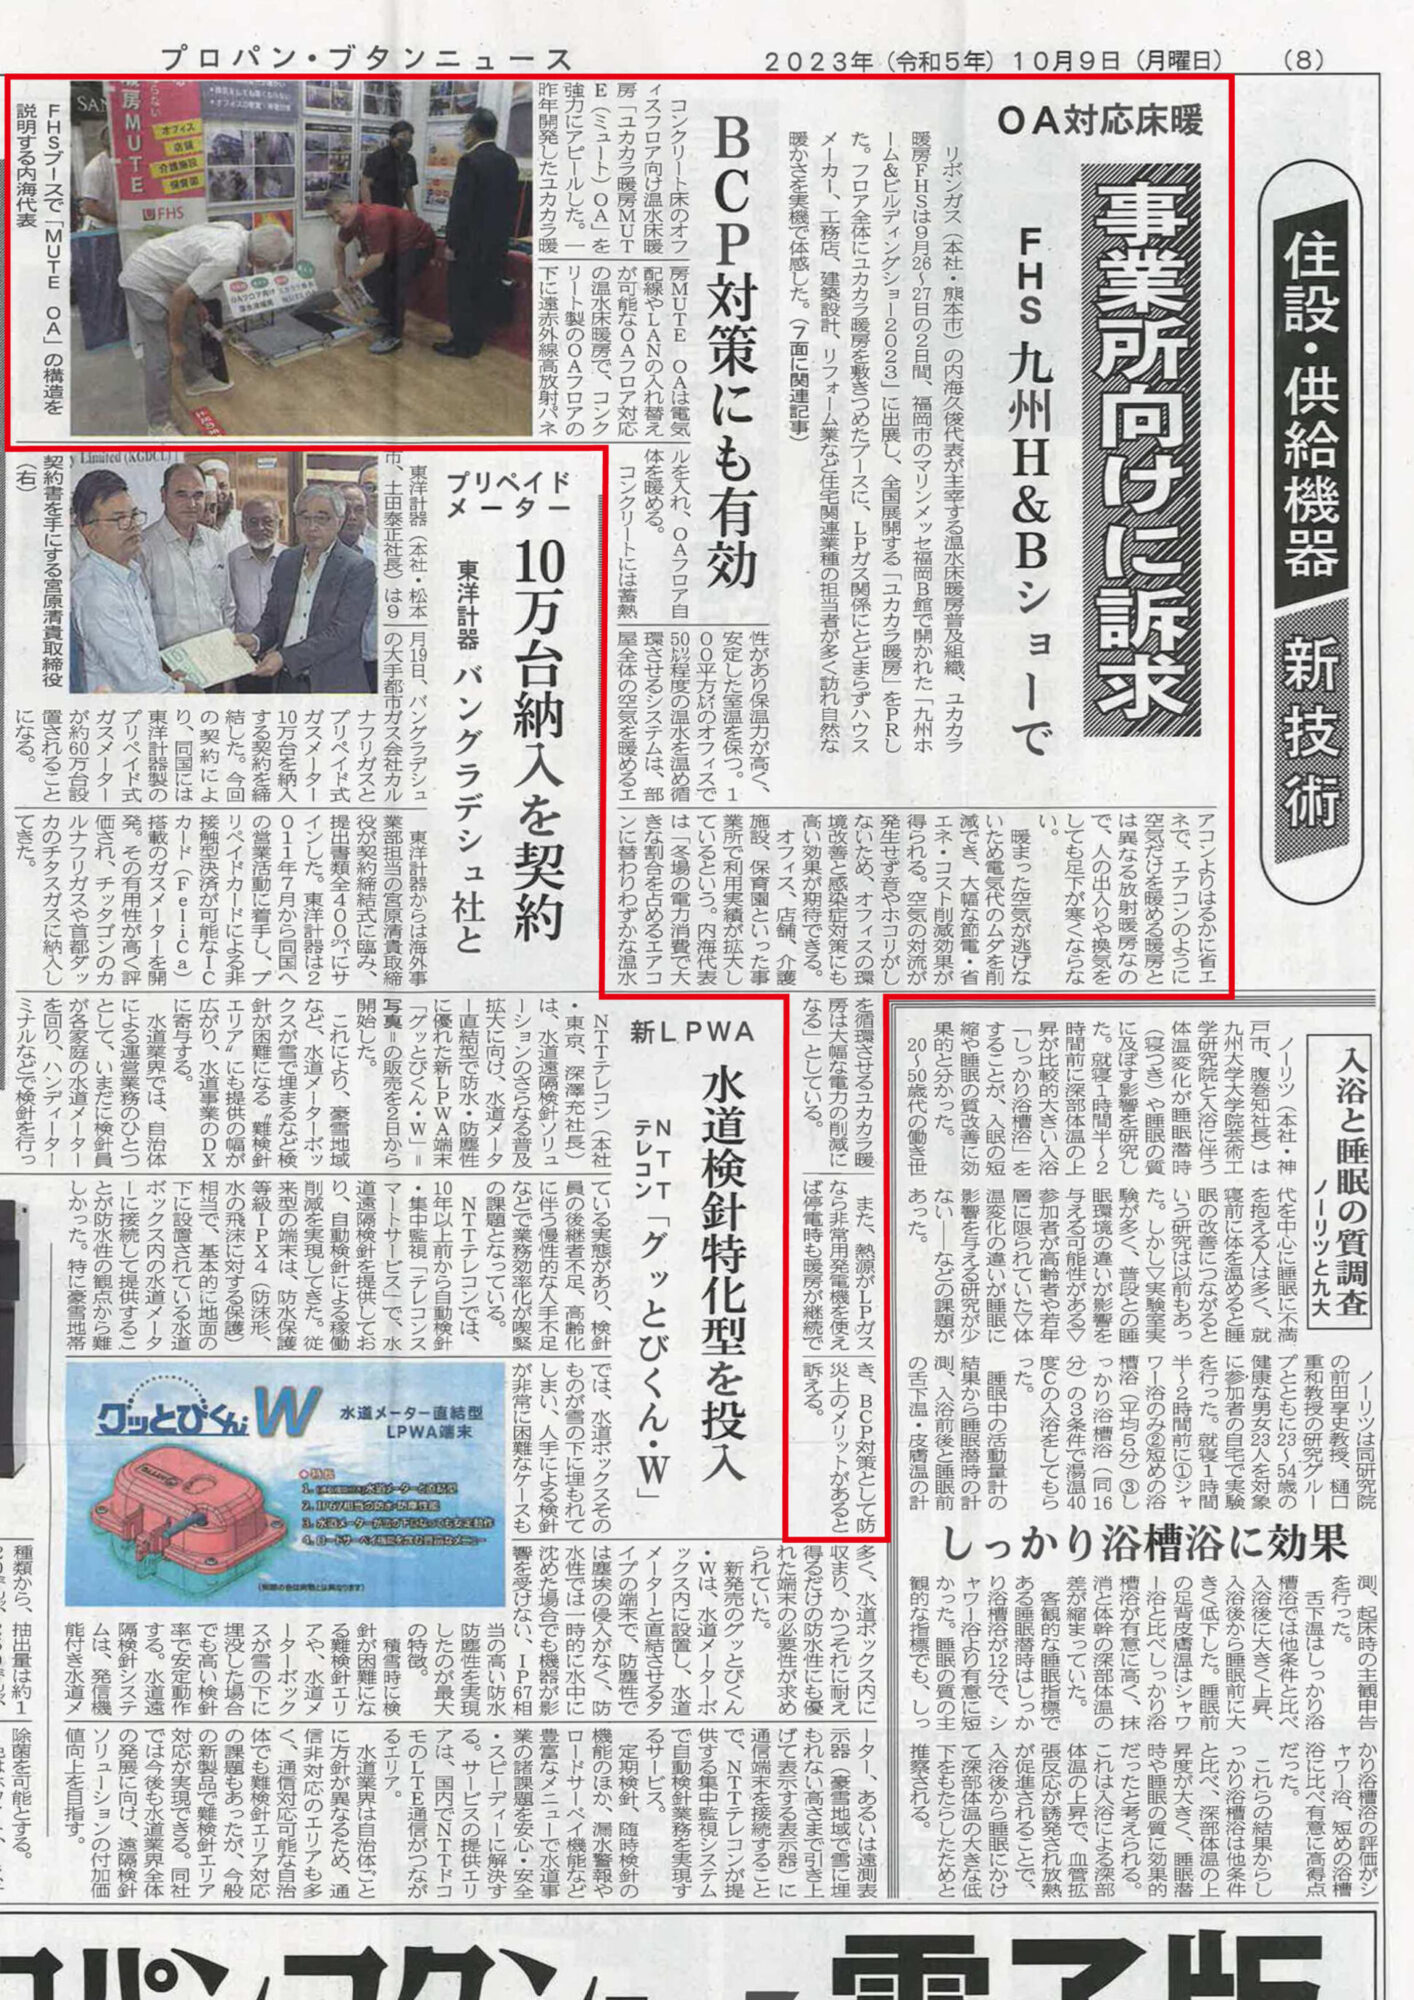 プロパン・ブタンニュースに福岡で開催された「九州H&Bショー」についての記事が掲載されました